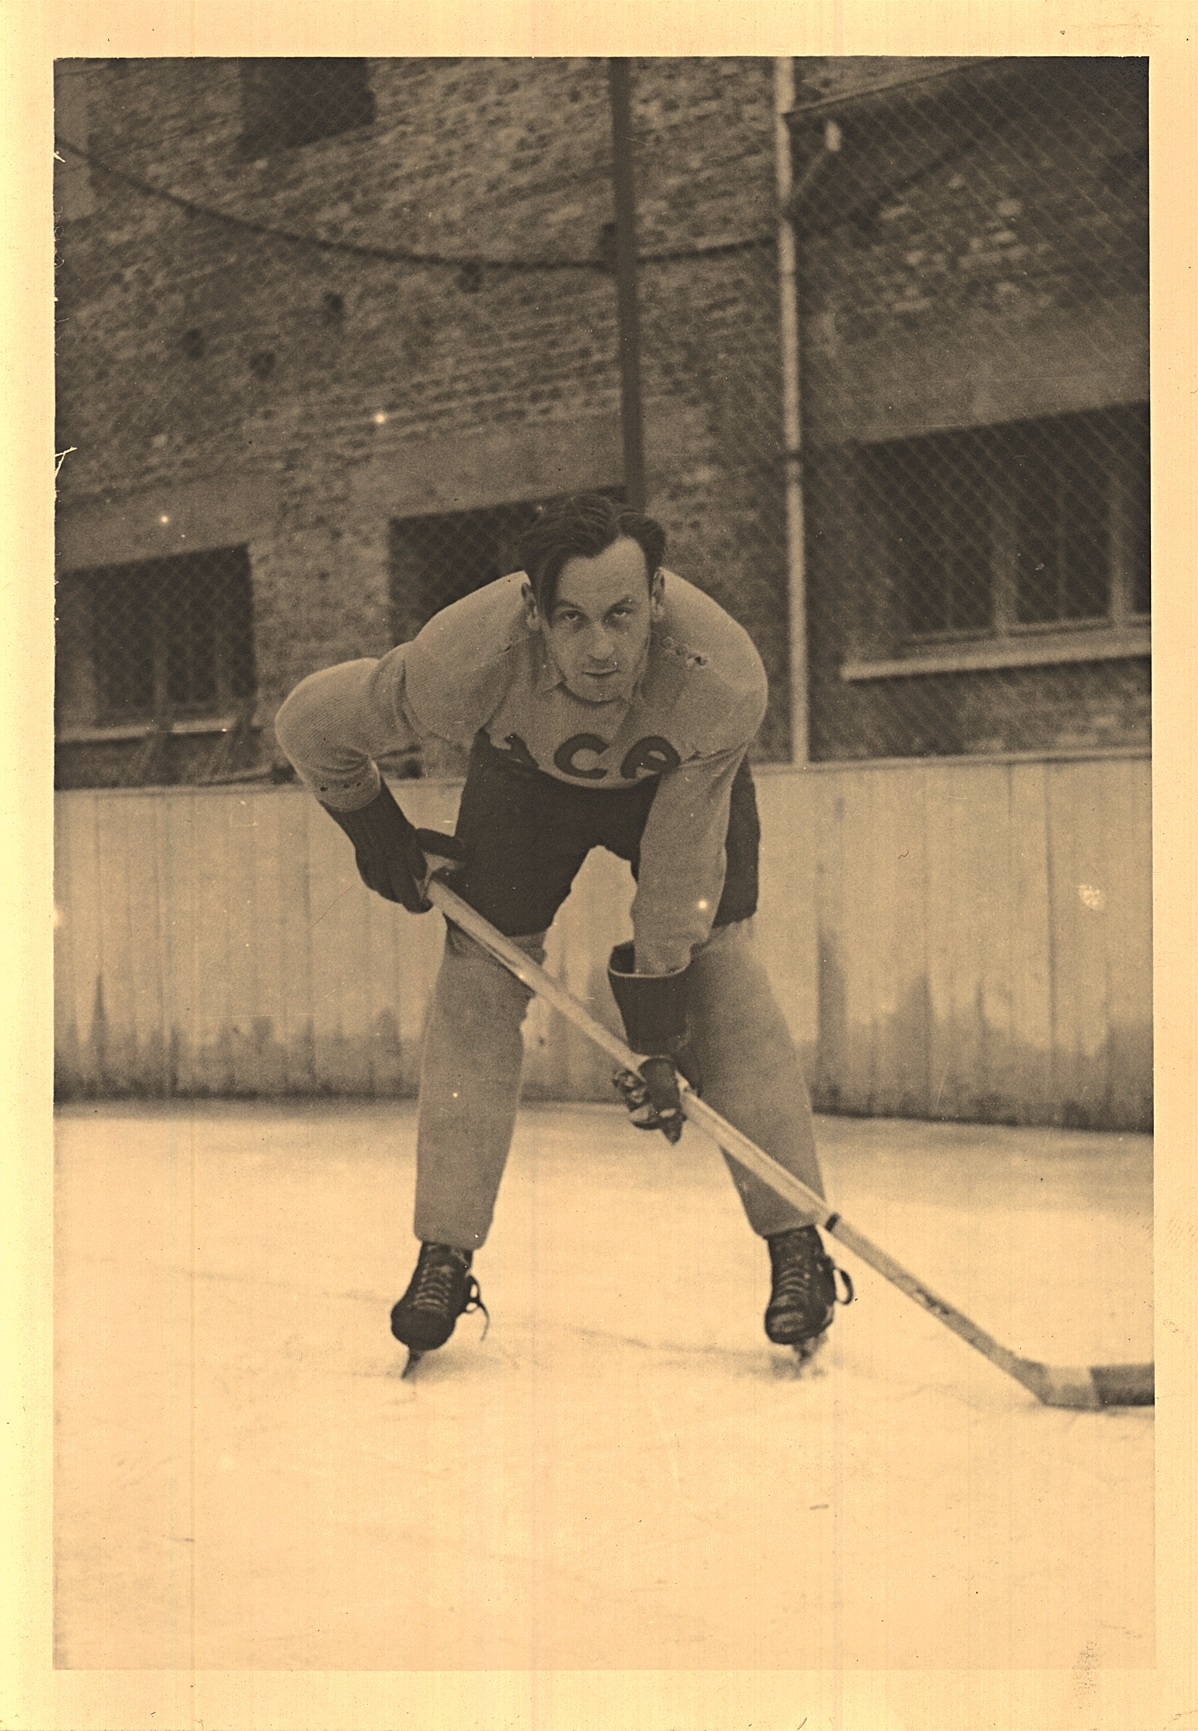 Ilggadējais Latvijas izlases uzbrucējs Roberts Bluķis kļuva par HC Augsburg spēlējošo treneri un aizsardzības stūrakmeni. Foto: Bluķu ģimenes kolekcijā (autors nezināms)